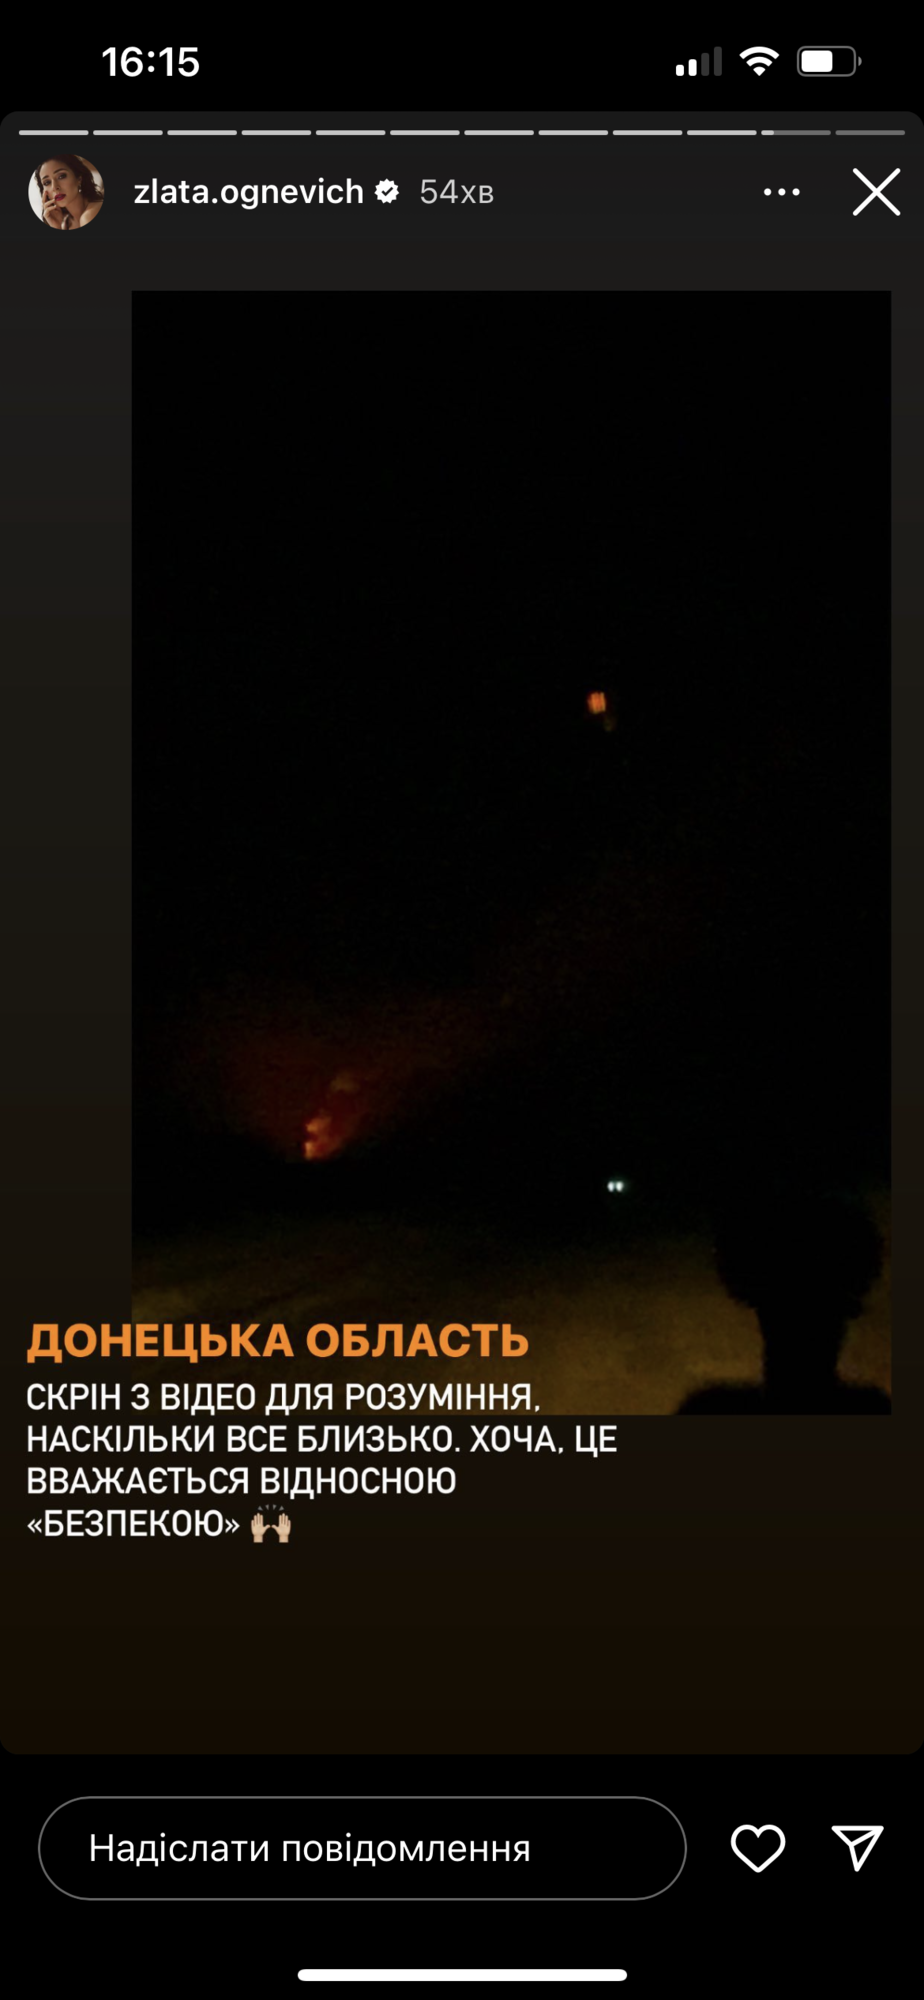 "Розірвані снаряди, вибухи": Огнєвіч побувала в Донецькій області, де уперше в житті побачила роботу артилерії. Фото